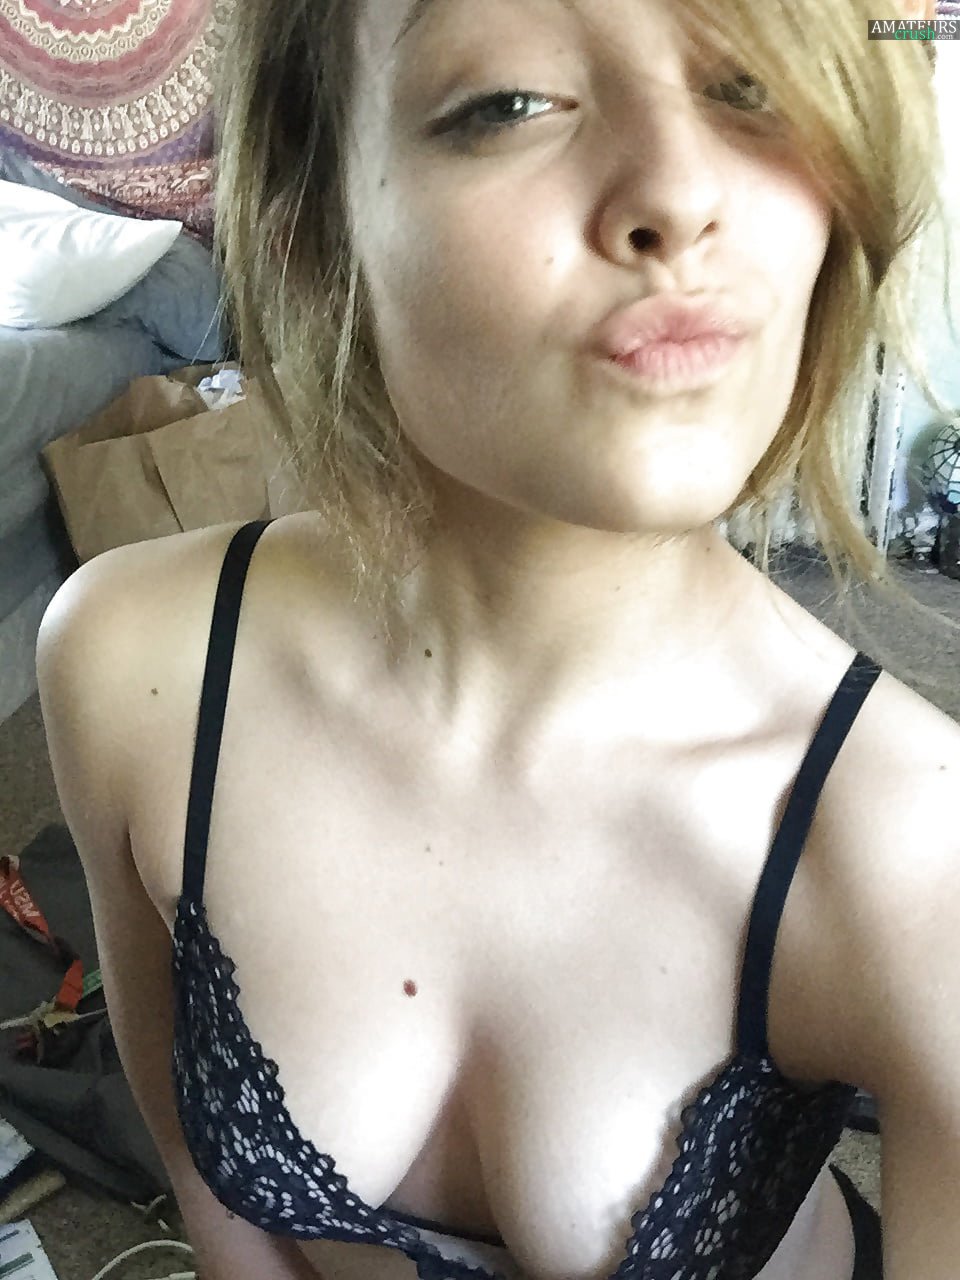 galleries blonde bra cleavage selfie pics